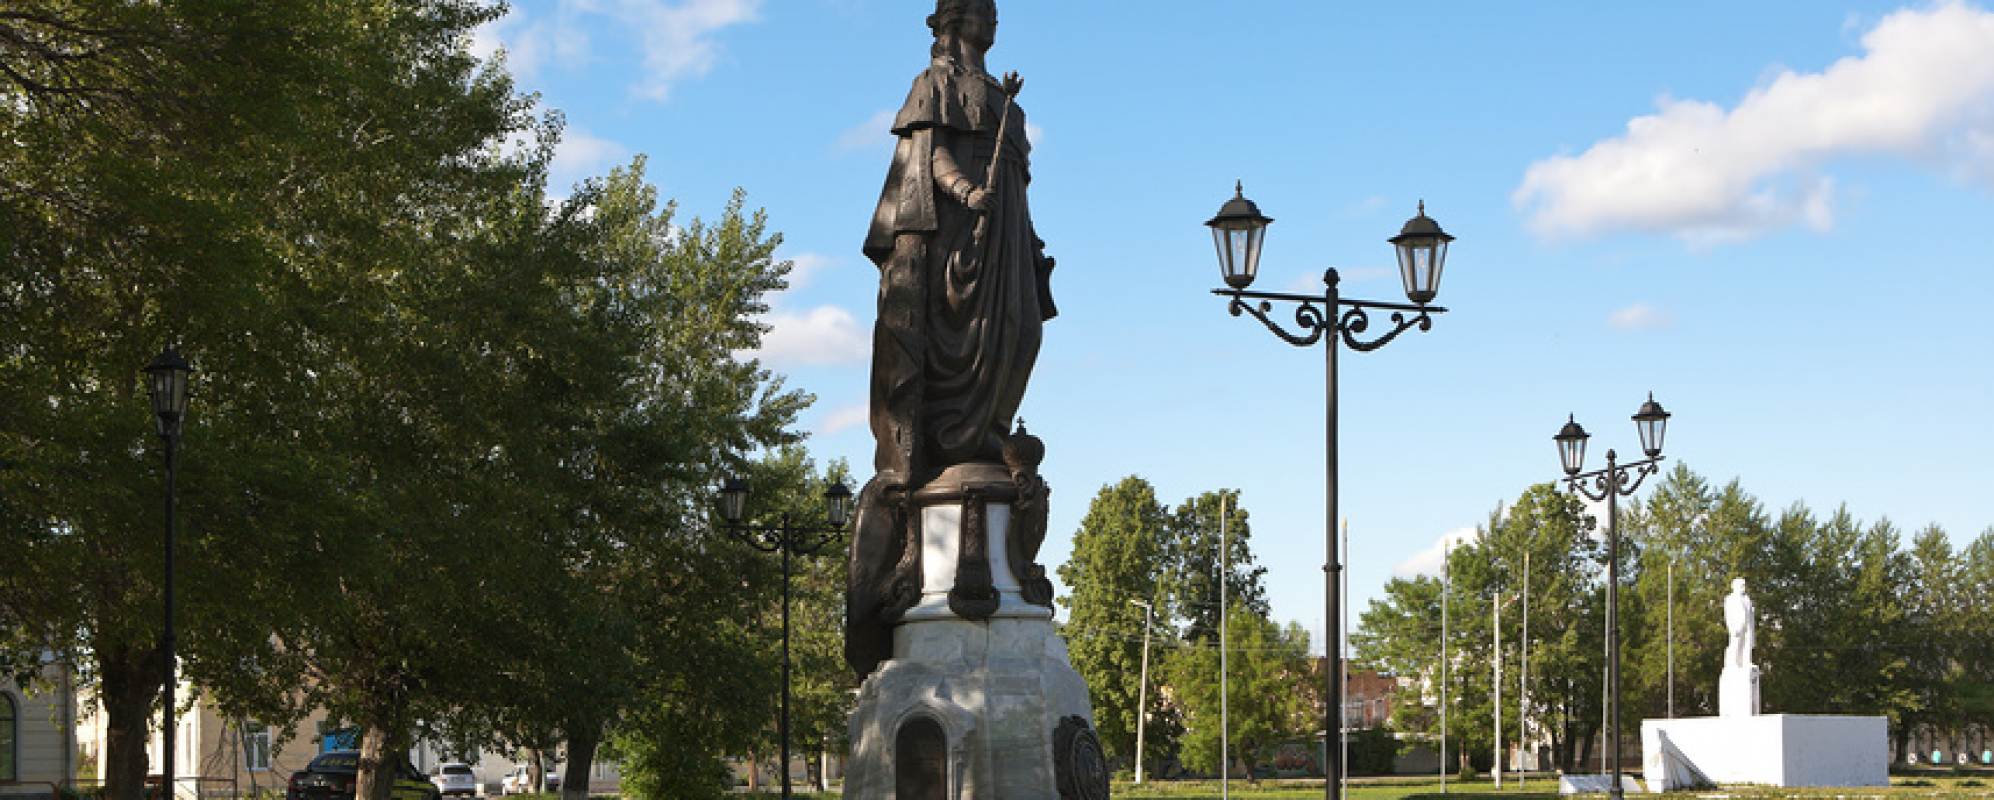 Фотографии памятника Памятник Екатерине II